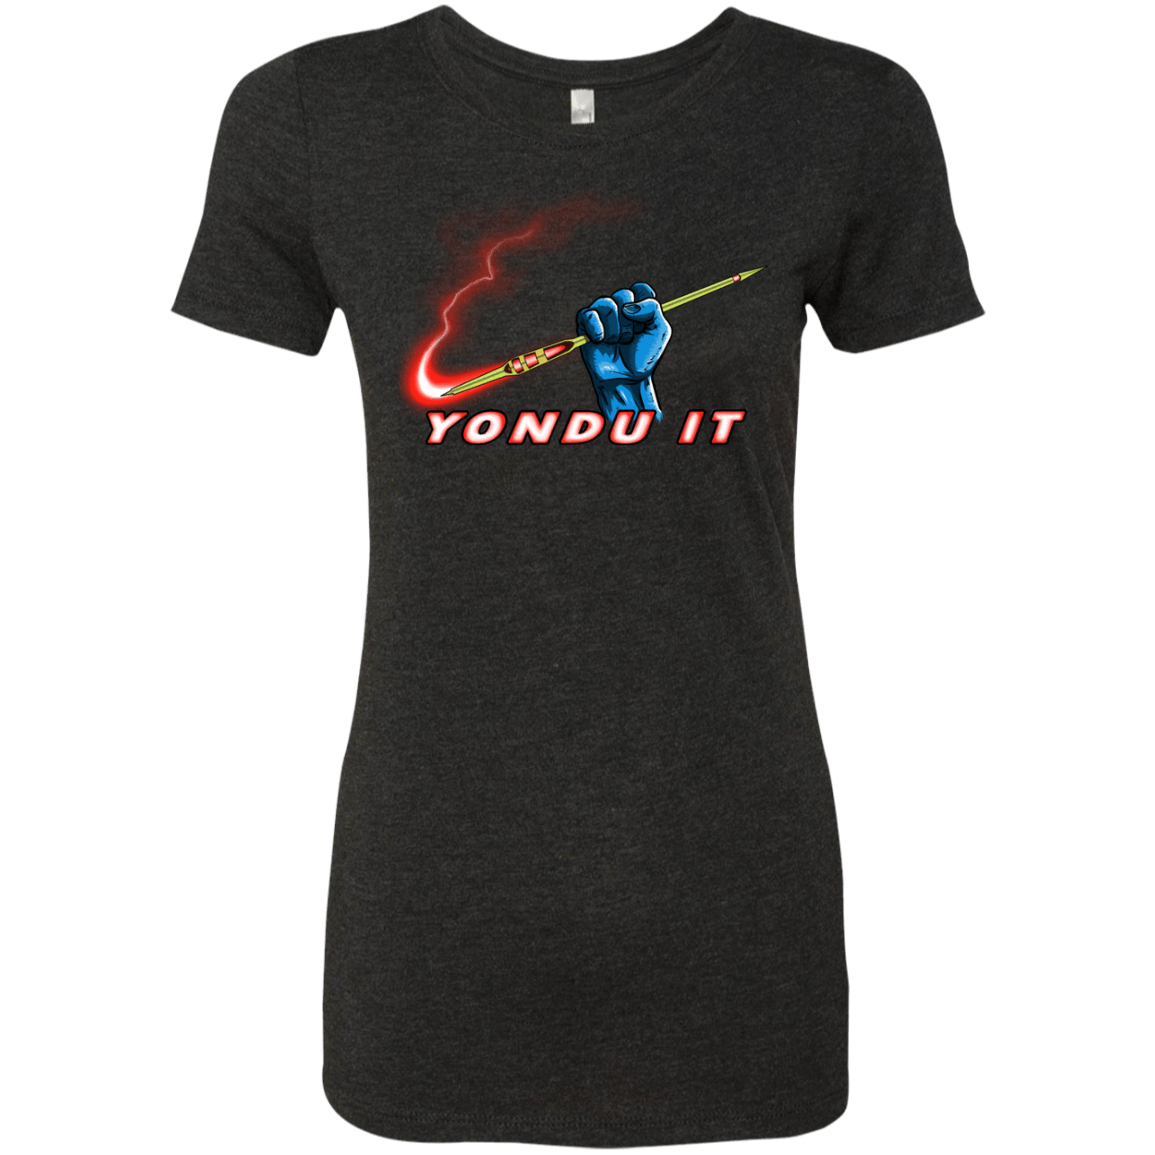 T-Shirts Vintage Black / S Yondu It Women's Triblend T-Shirt